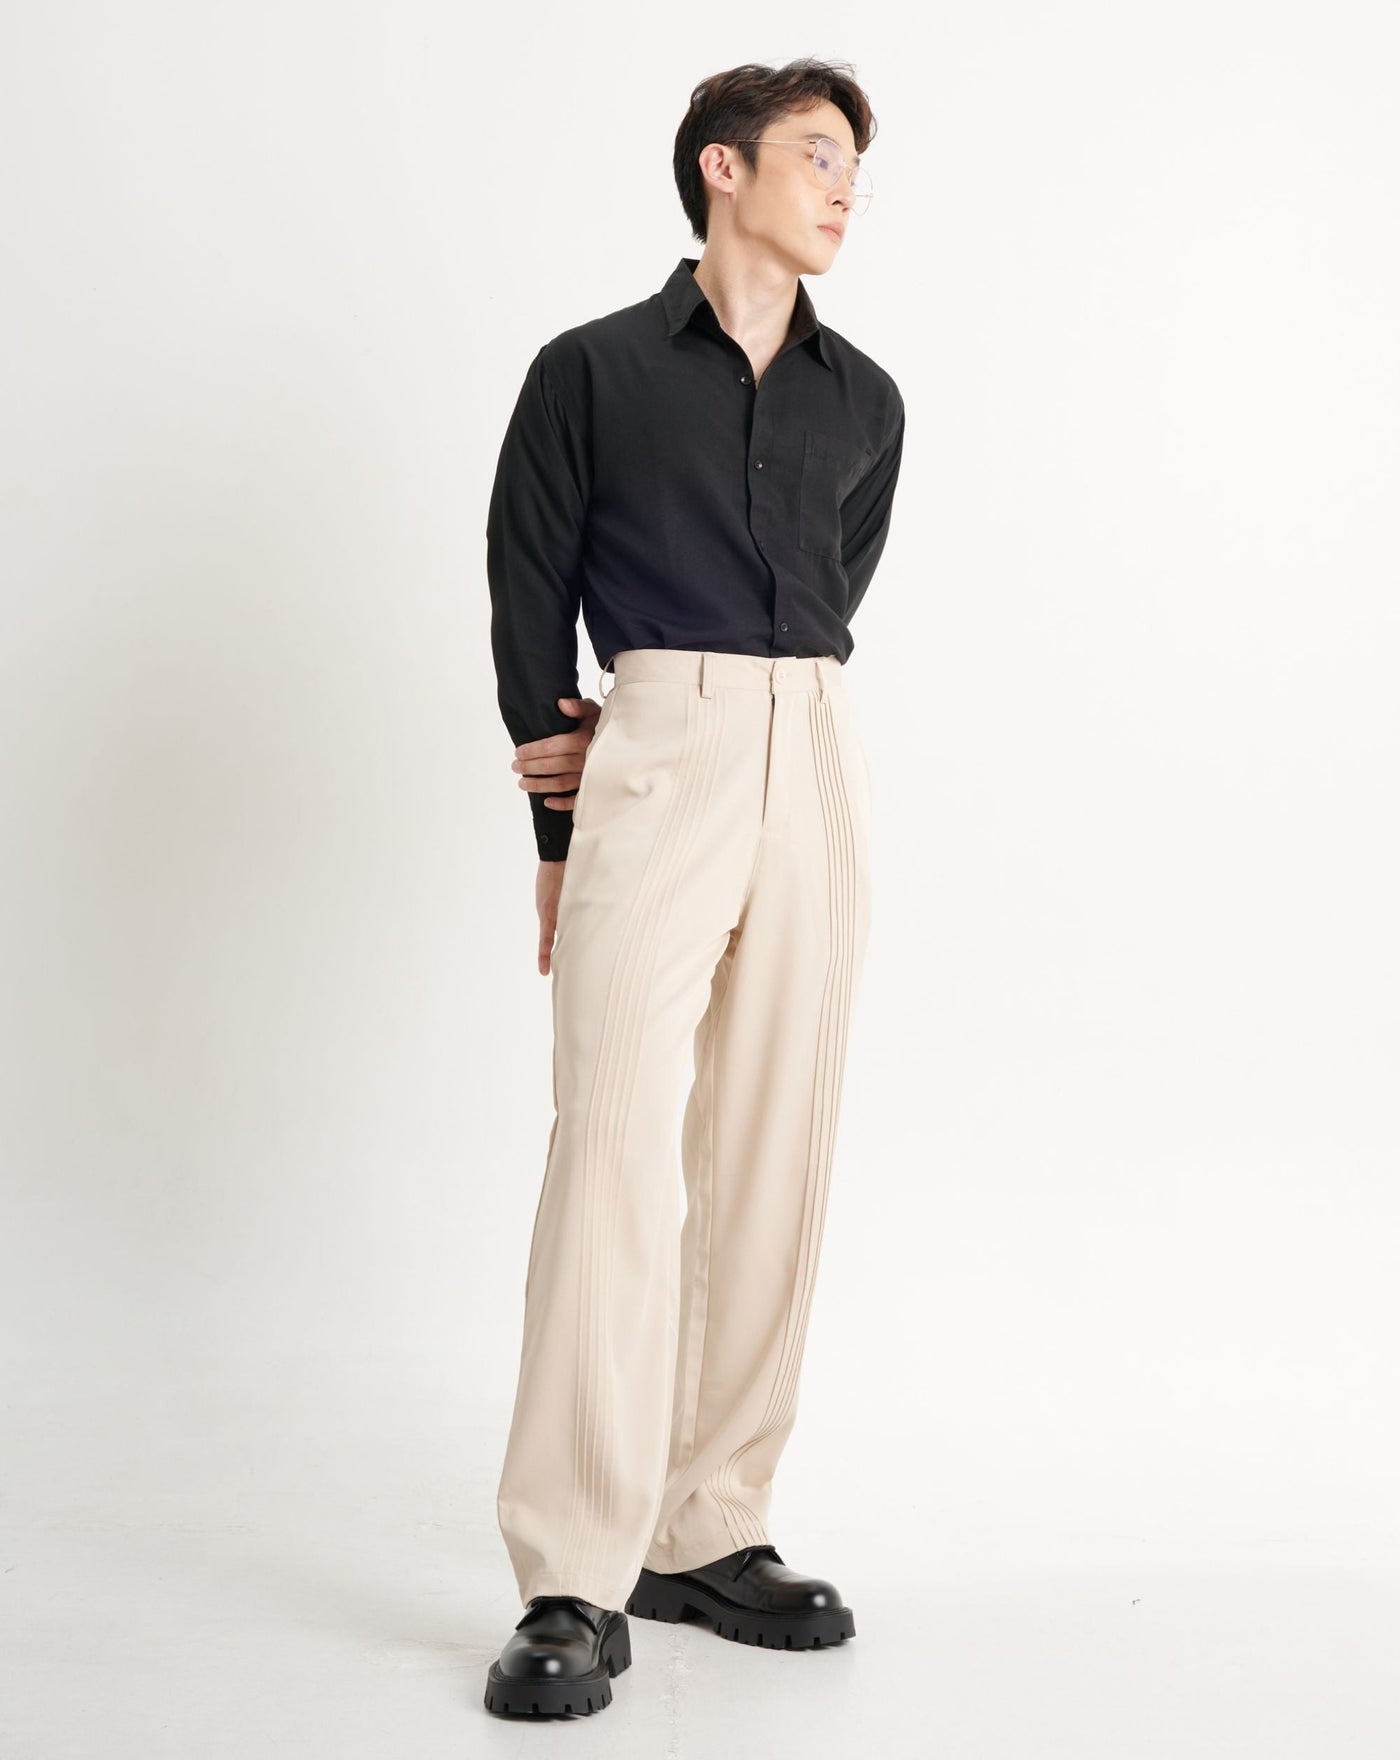 Korean Pants For Men | Korean Dress Ideas - YouTube